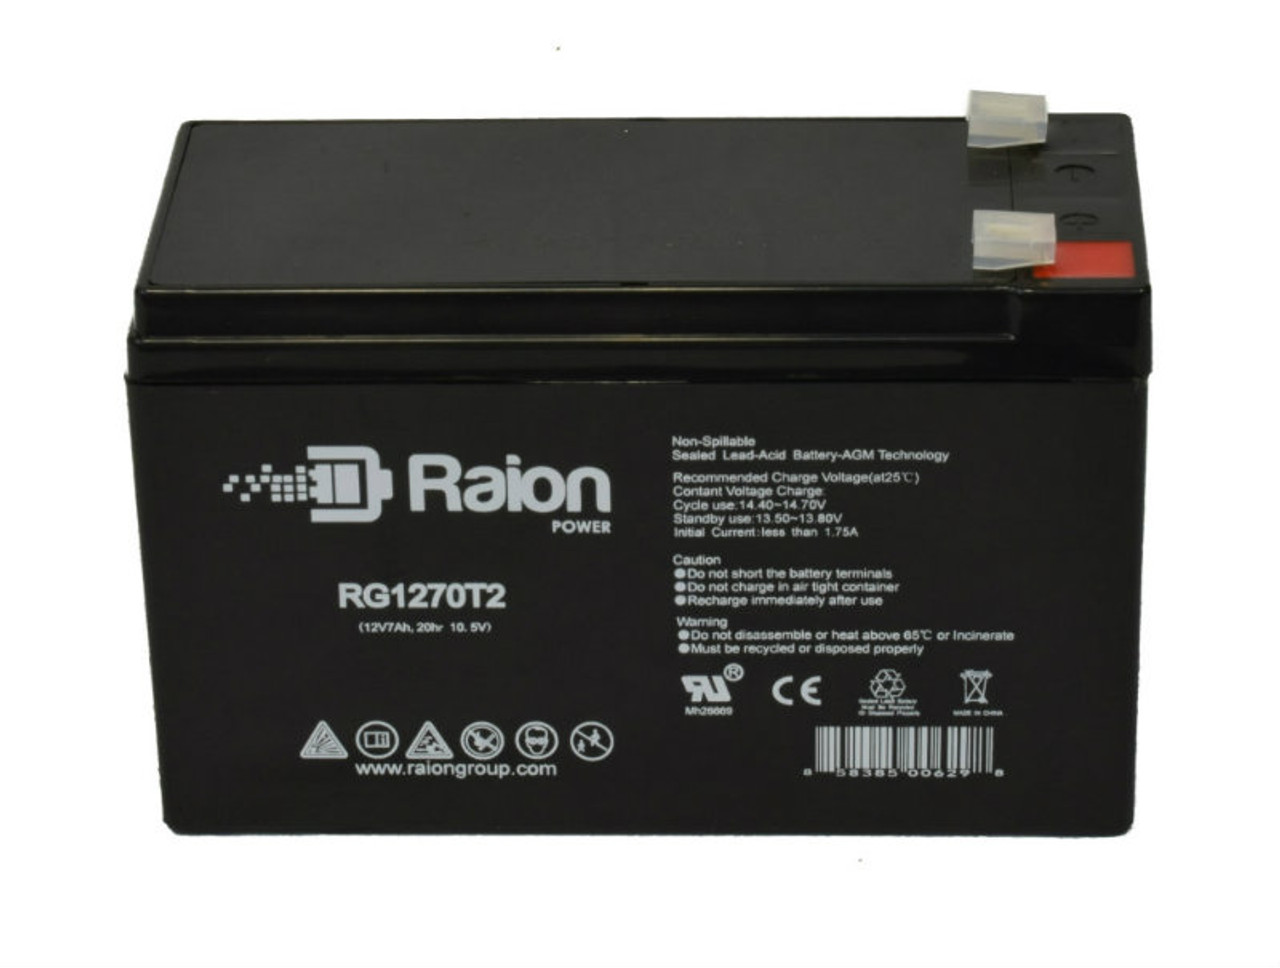 Raion Power RG1270T2 12V 7Ah Lead Acid Battery for Duracell DURA12-7F2